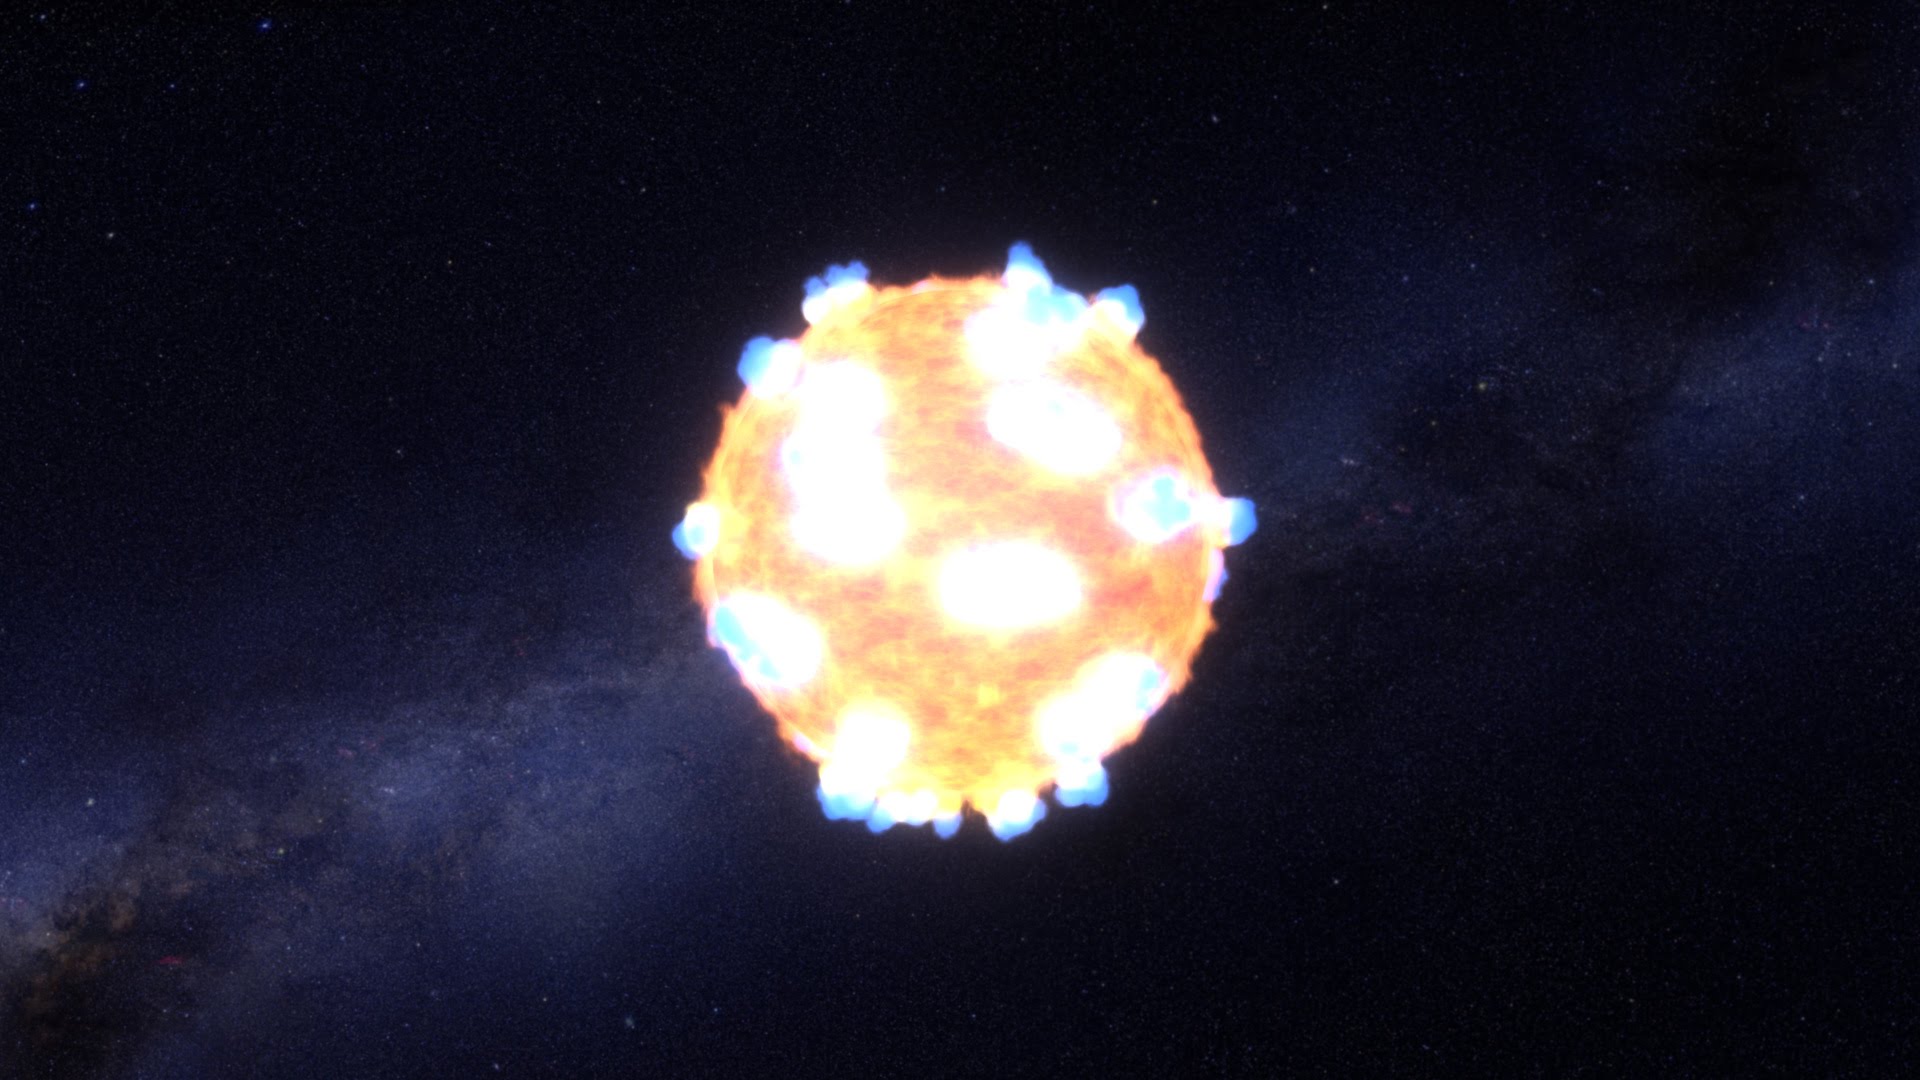 “Uhvaćena” prvi put: NASA objavila snimak eksplozije zvijezde